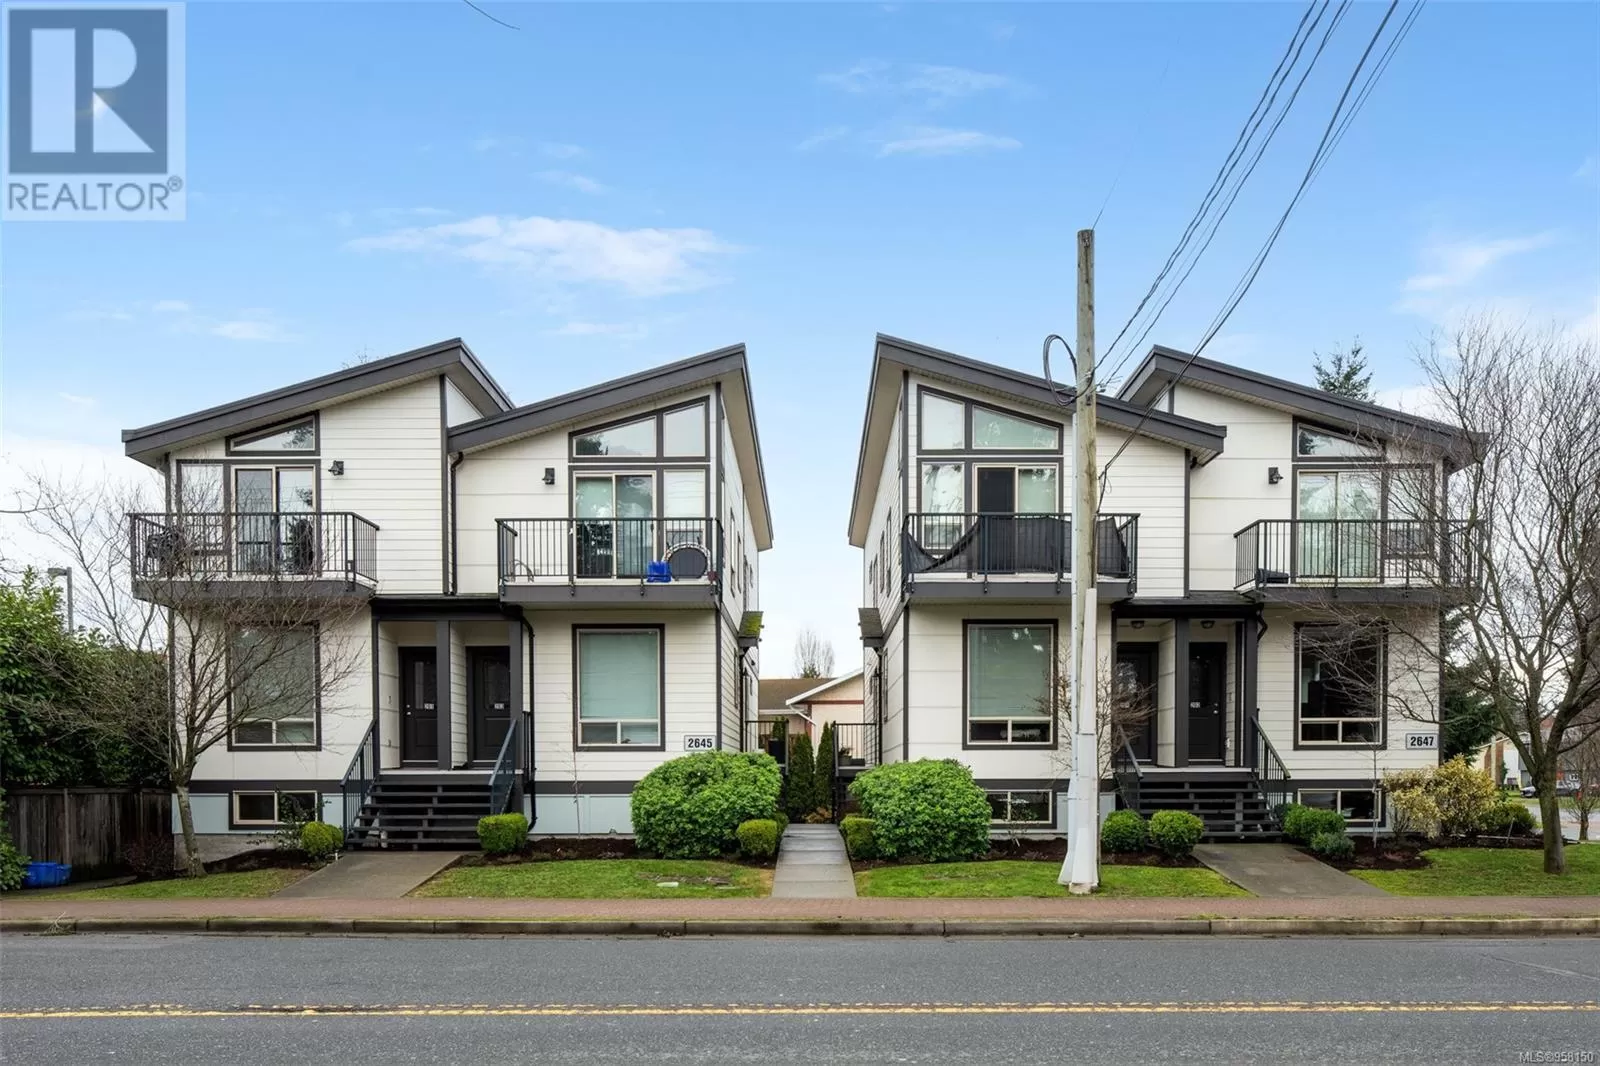 Multi-Family for rent: 2645/2647 Peatt Rd, Langford, British Columbia V9B 3T9